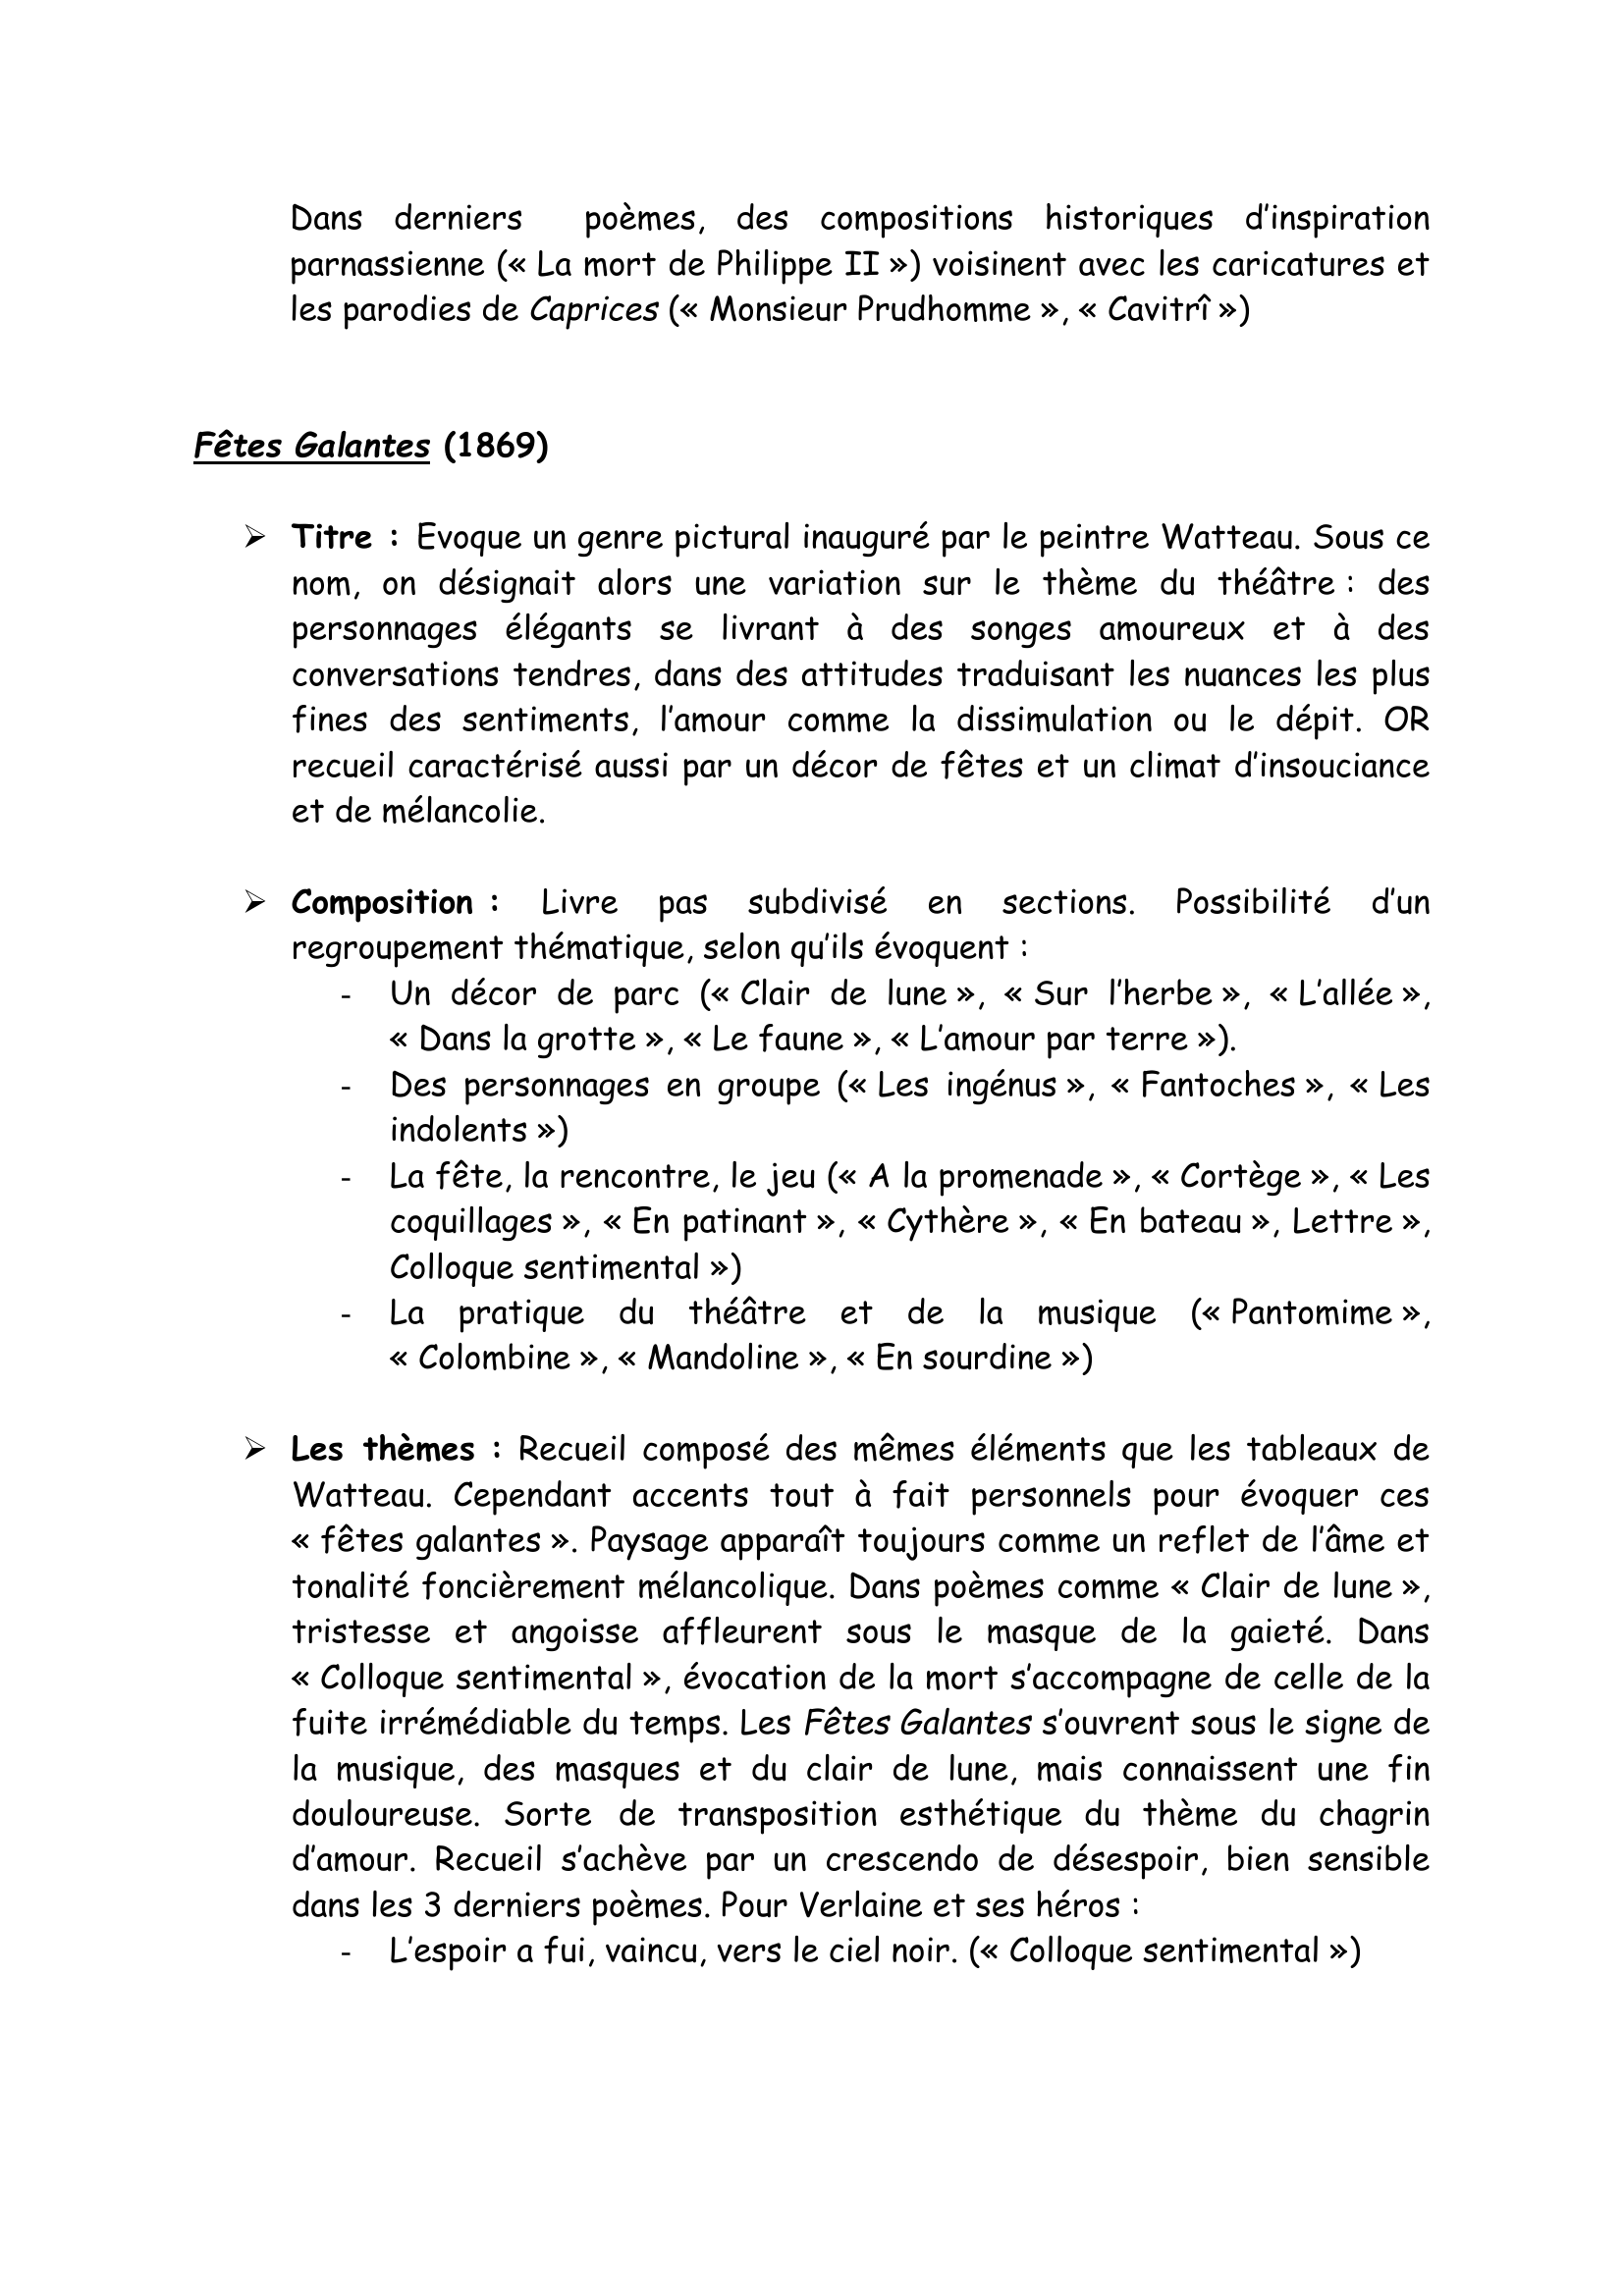 Prévisualisation du document ANALYSE DES RECUEILS DE POESIES DE VERLAINE  (librement inspirée du profil sur Les Fêtes galantes,  très intéressant à mon goût)